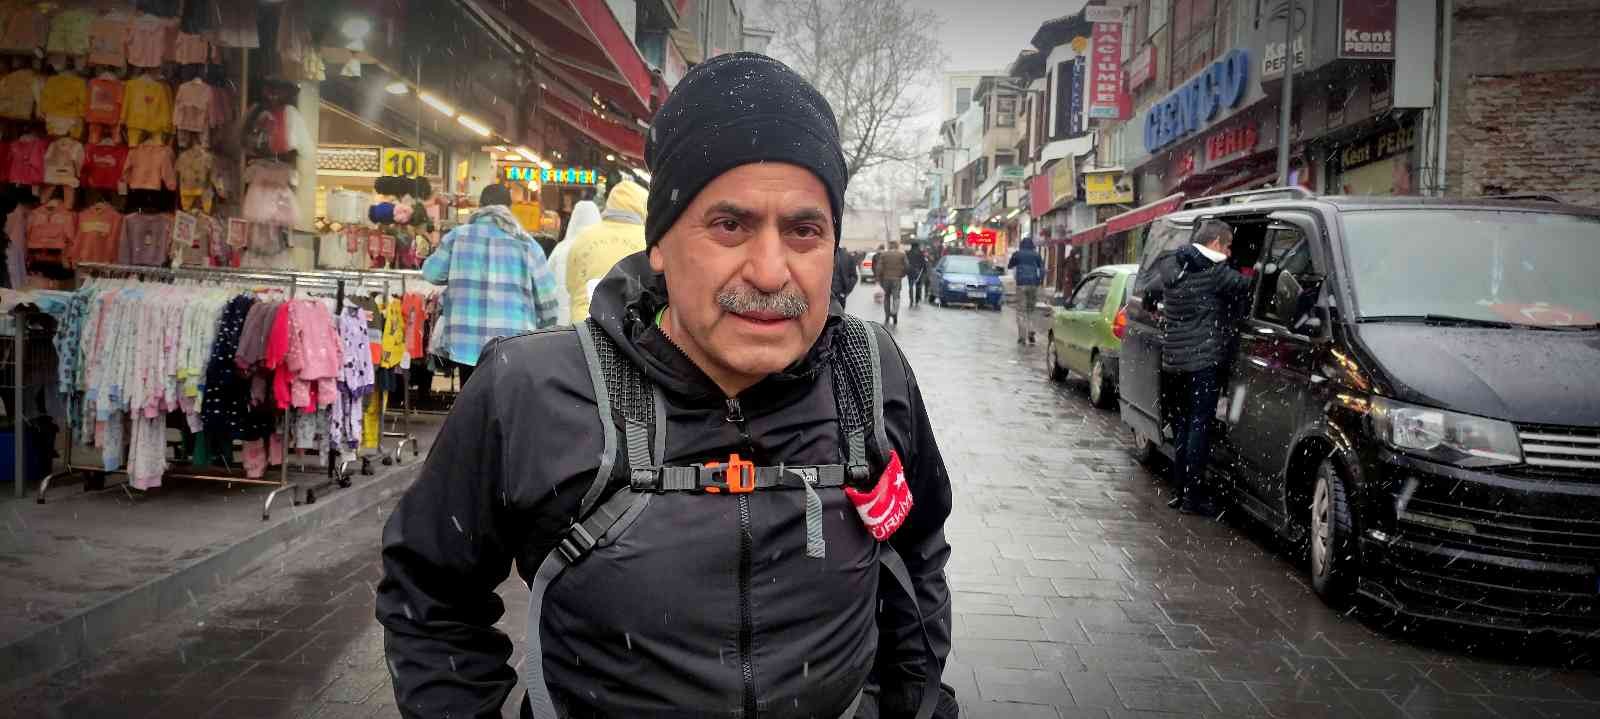 Bursa’da atletizm de yapan bir esnaf; her gün 20 kilometre uzaklıktaki evine koşarak gidiyor. Enver Koç, hem sağlıklı kalıyor hem de ulaşıma ...